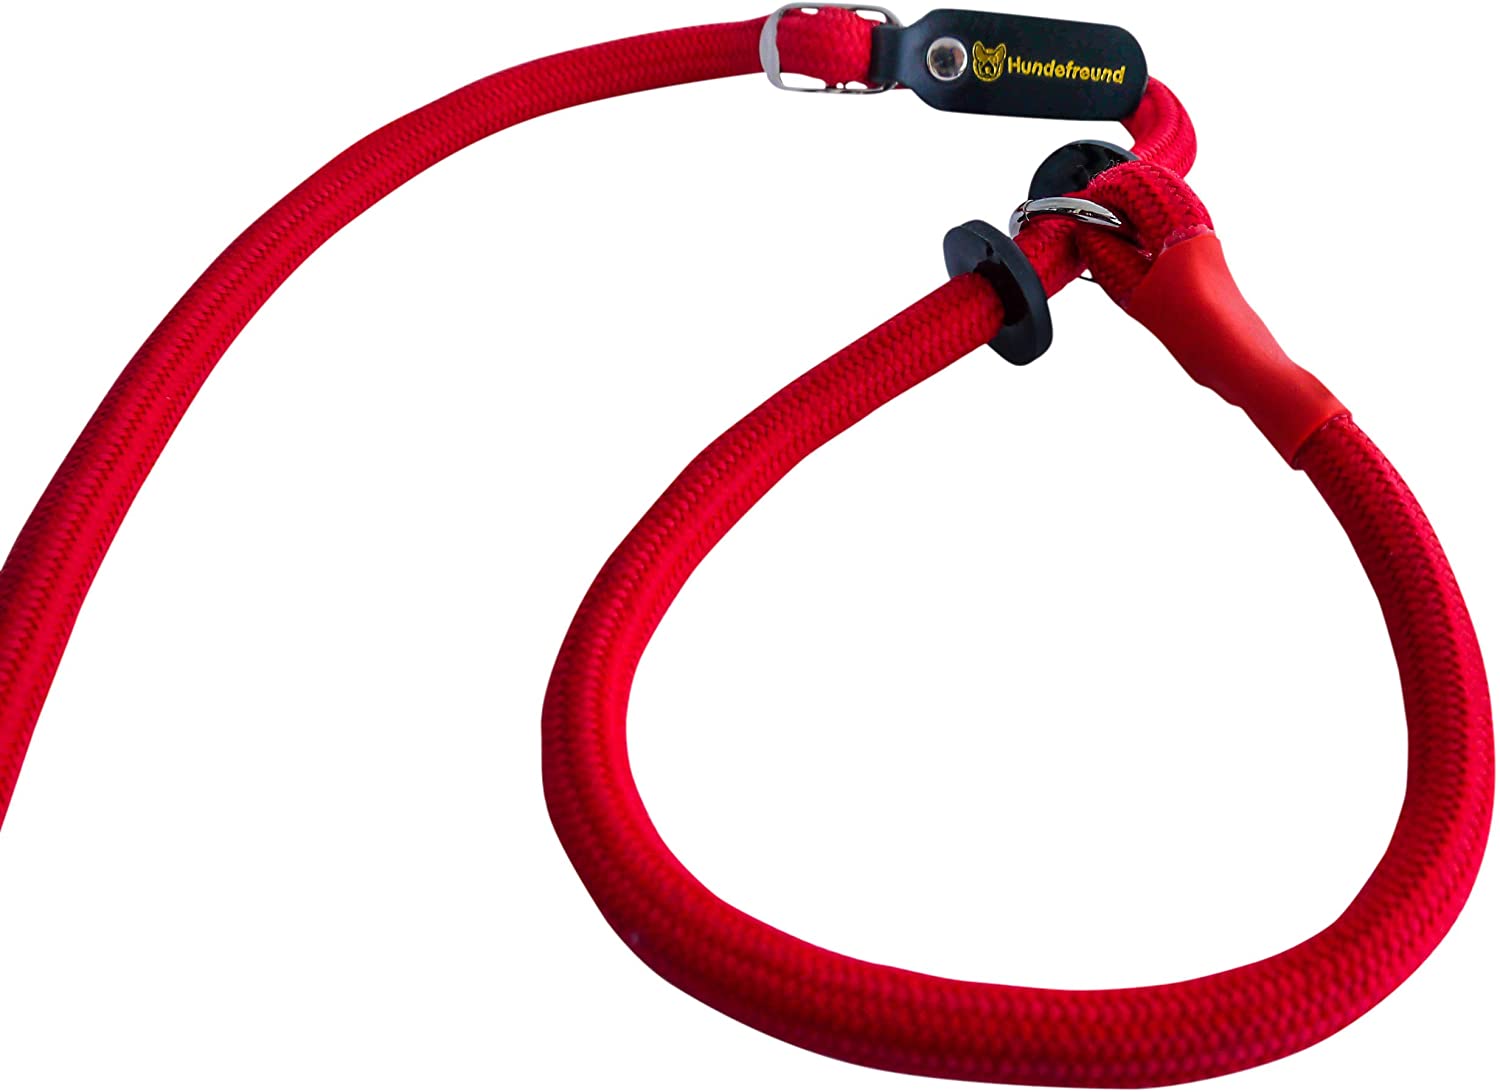  Retriever Correa | Correa y collar ligero en uno (200 cm) | Moxon cuerda para agility, de entrenamiento y adiestramiento 